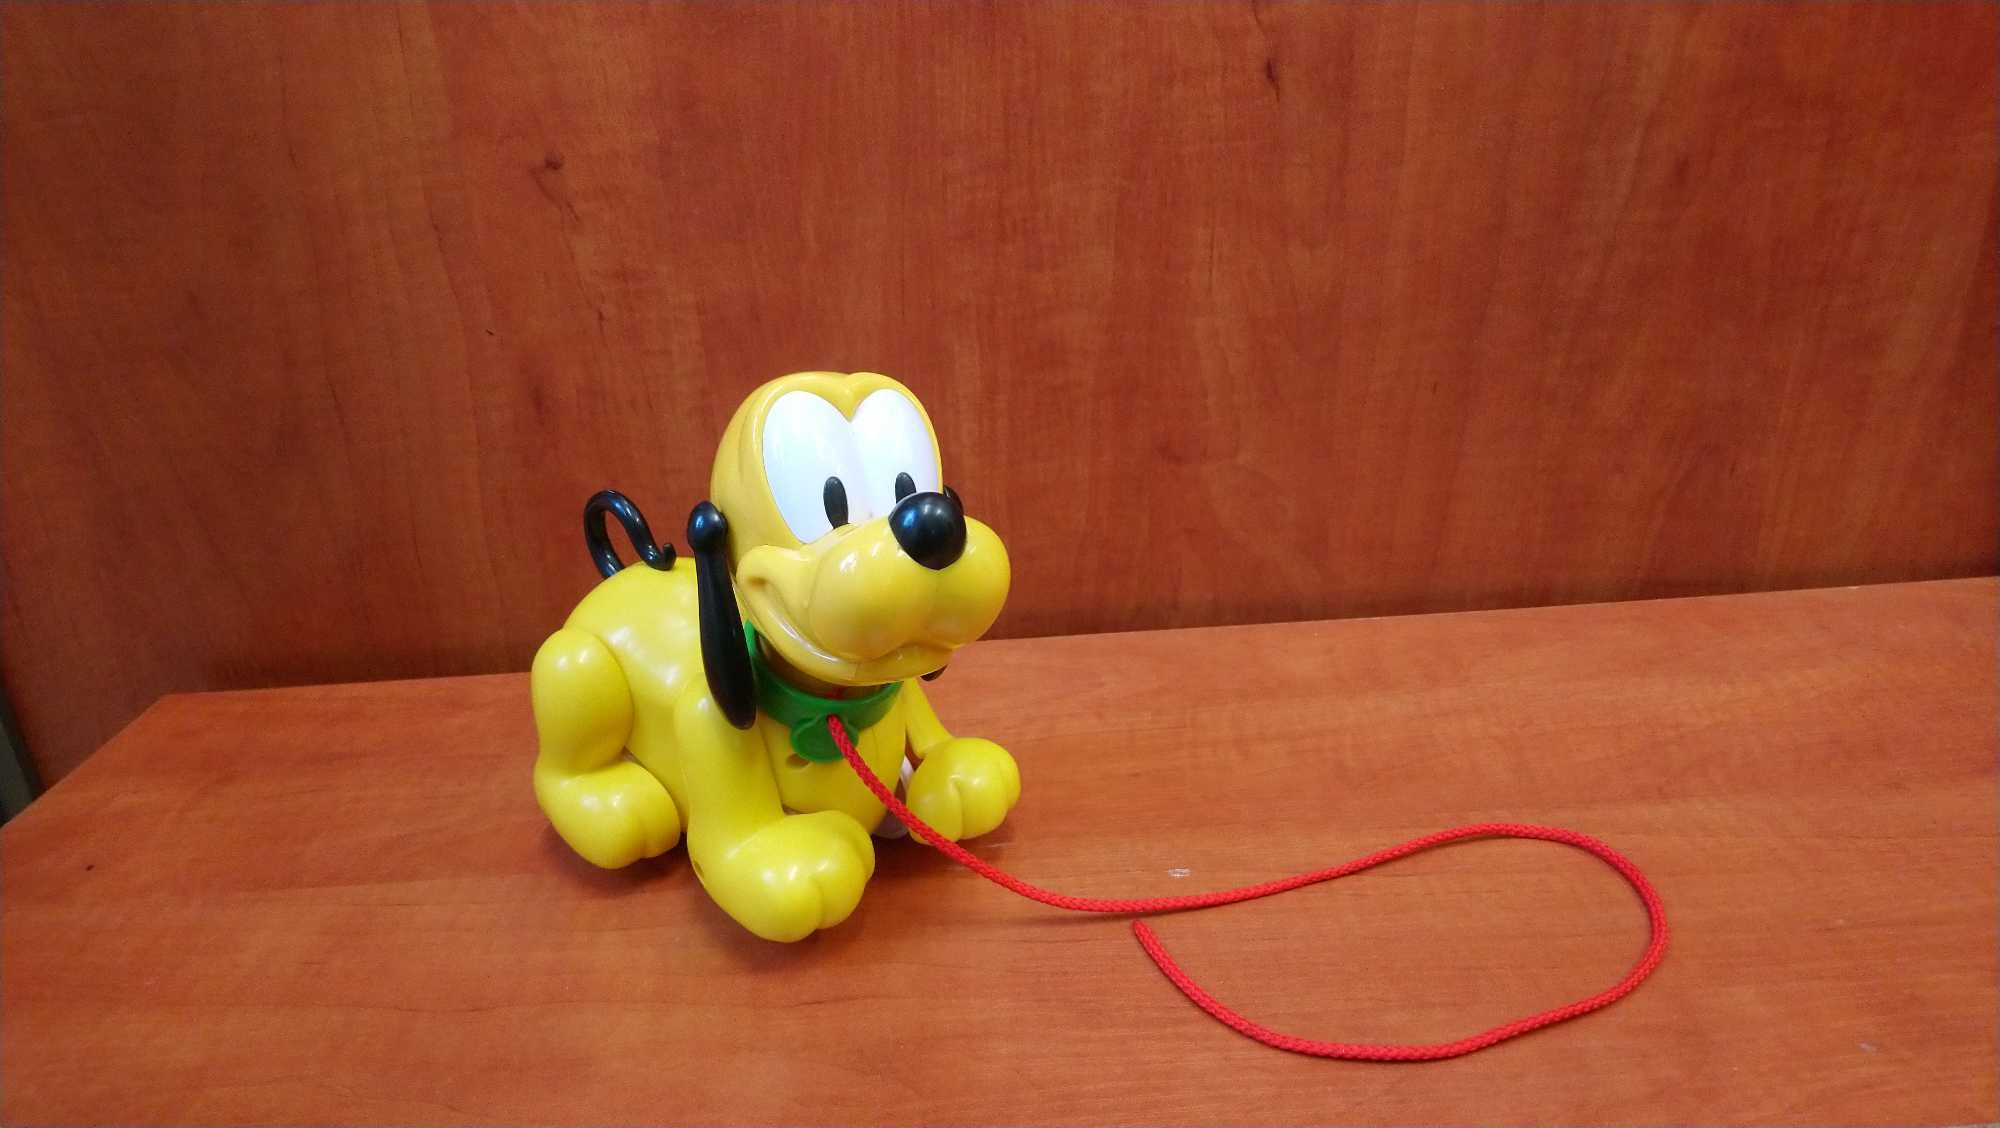 zabawka Piesek Pluto ze sznureczkiem